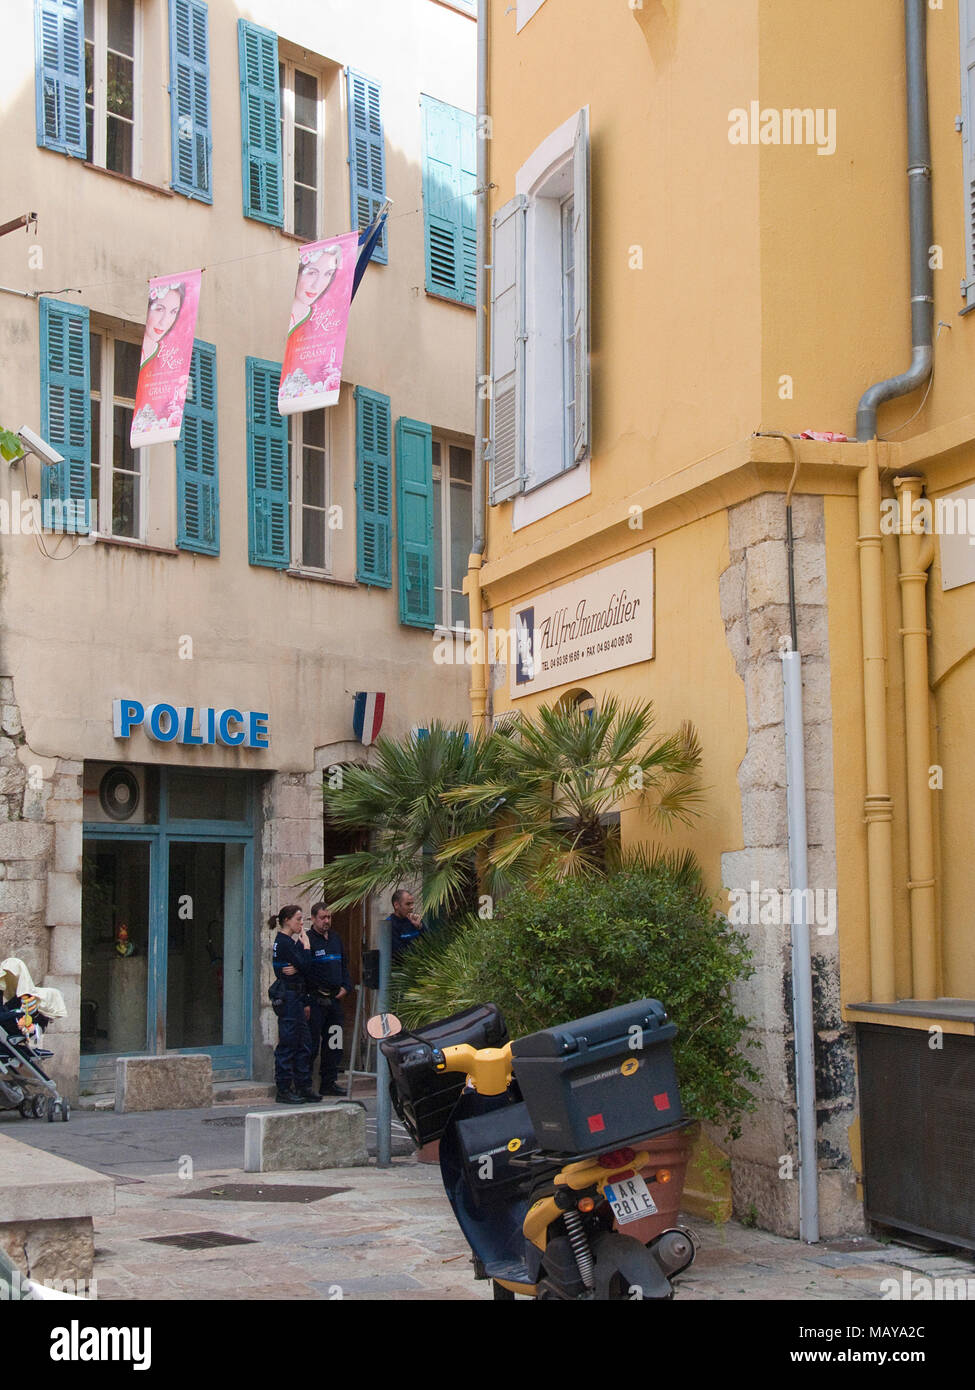 Poste de police de vieille ville de Grasse, Alpes-Maritimes, France du Sud, France, Europe Banque D'Images